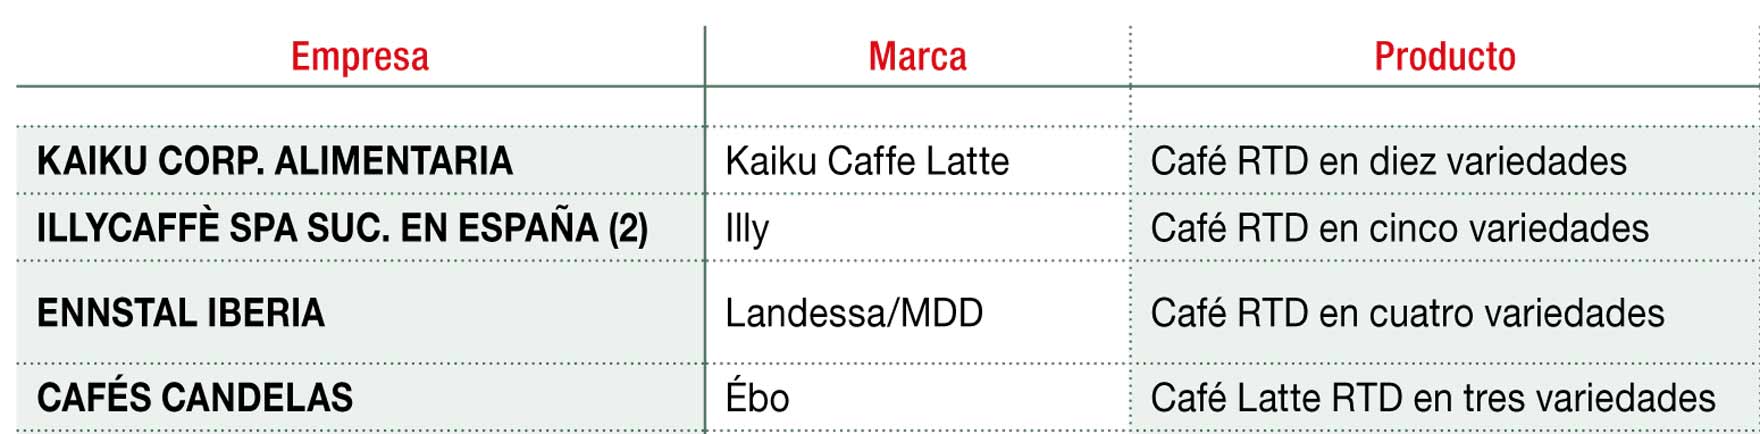 Principales marcas de café rtd